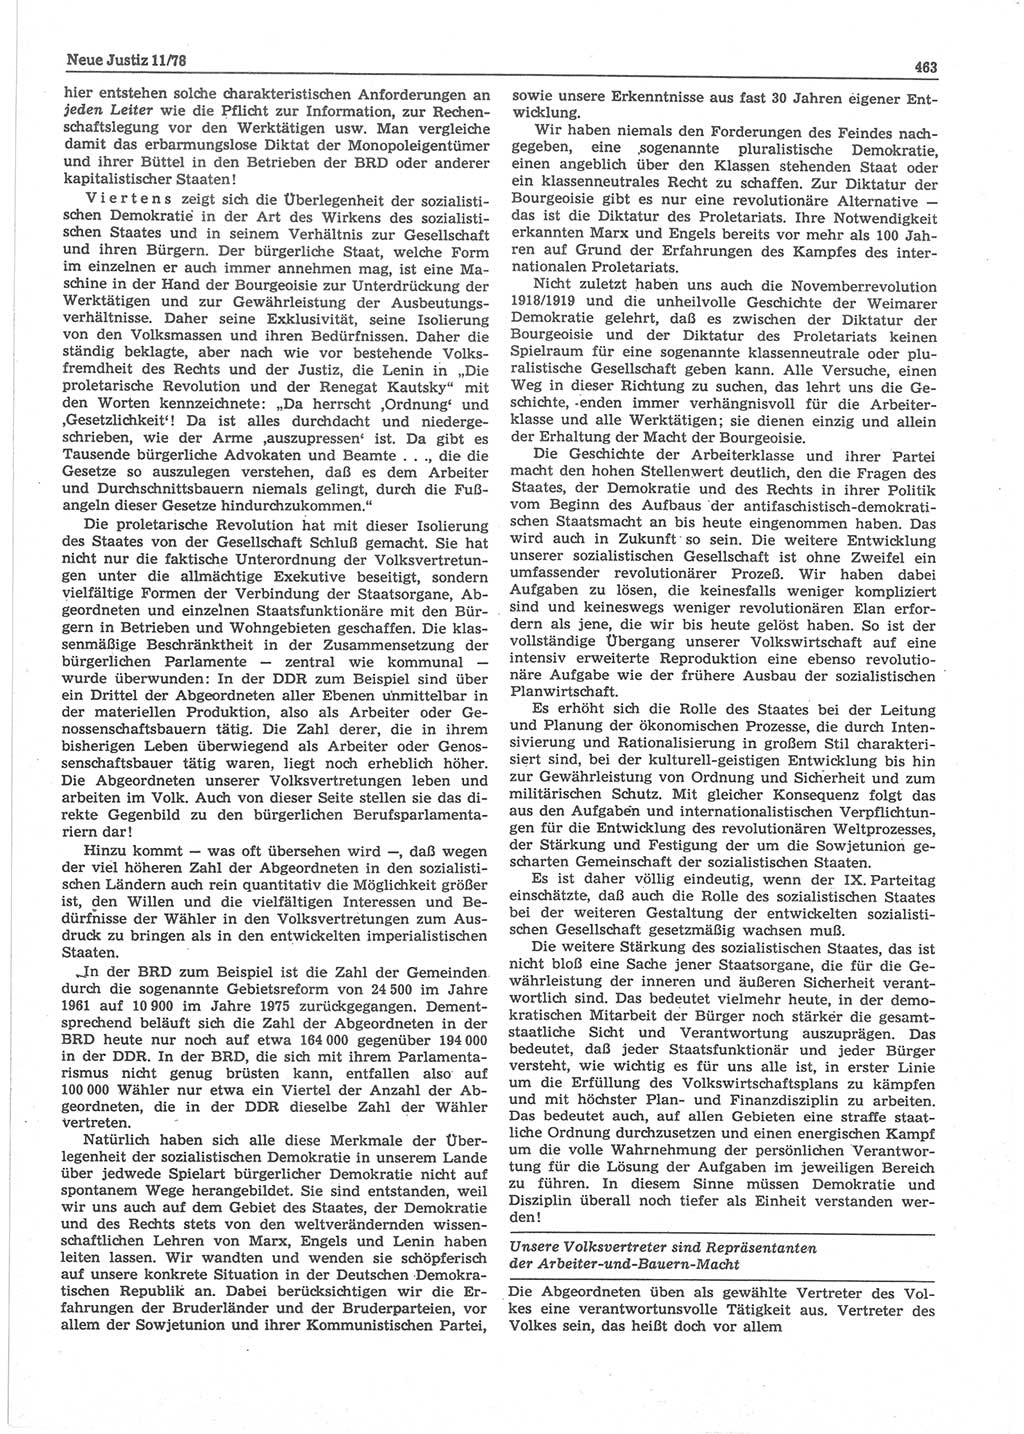 Neue Justiz (NJ), Zeitschrift für sozialistisches Recht und Gesetzlichkeit [Deutsche Demokratische Republik (DDR)], 32. Jahrgang 1978, Seite 463 (NJ DDR 1978, S. 463)